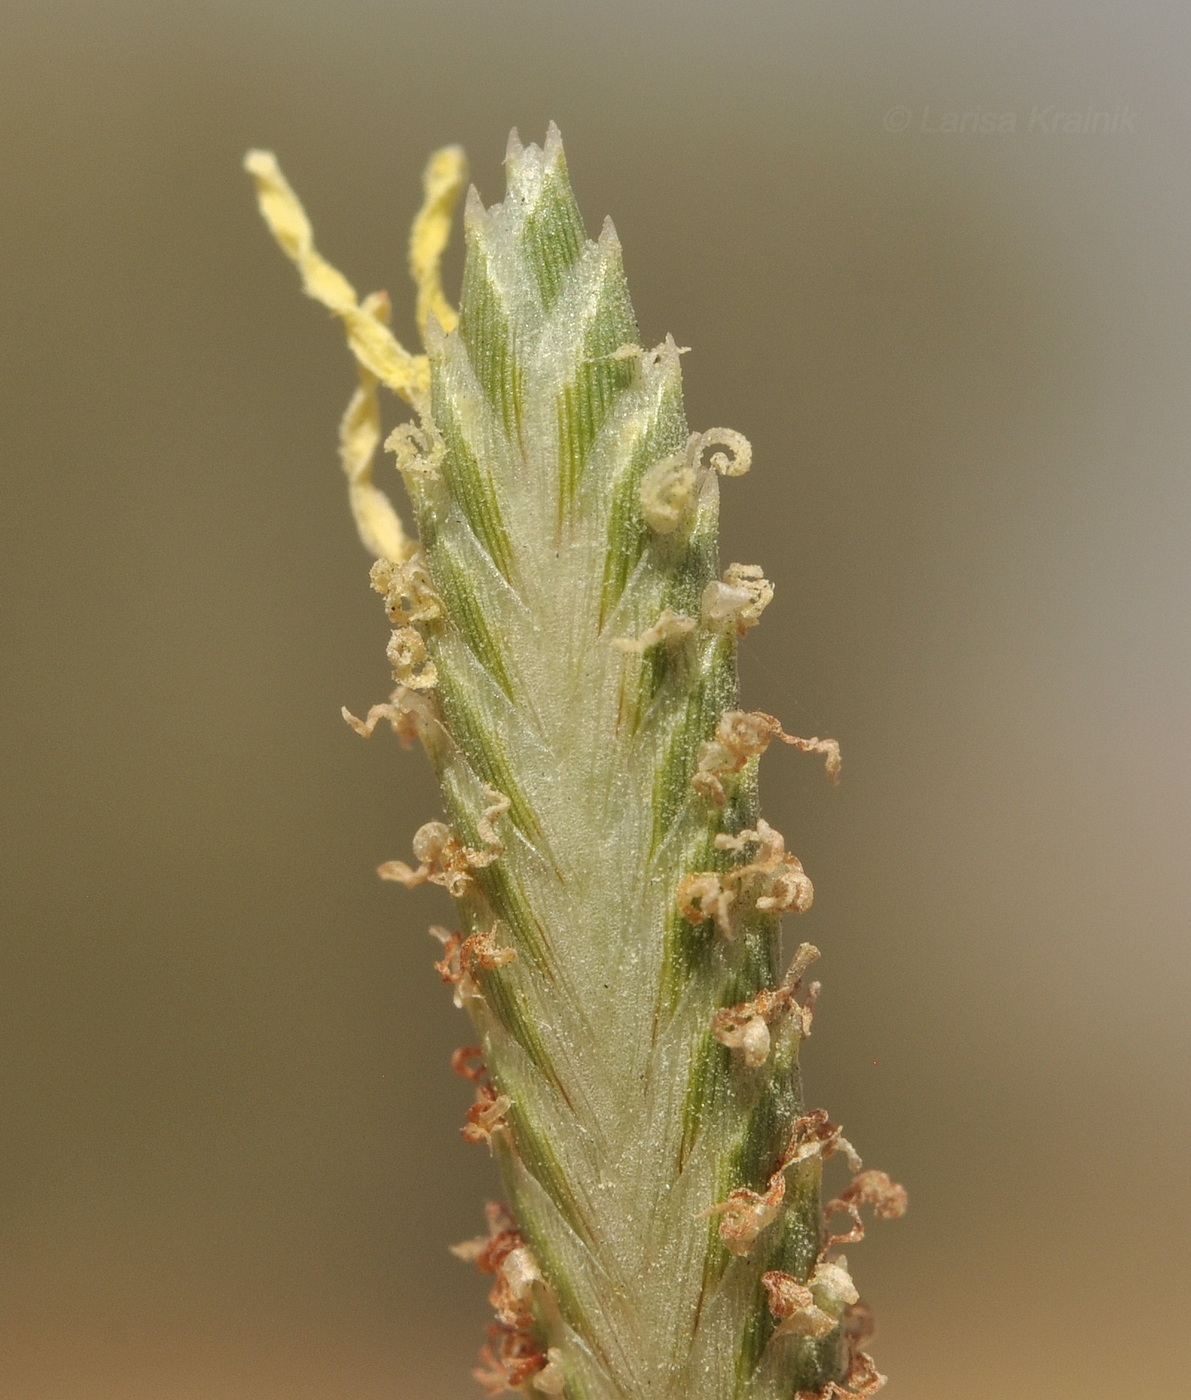 Image of genus Cyperus specimen.